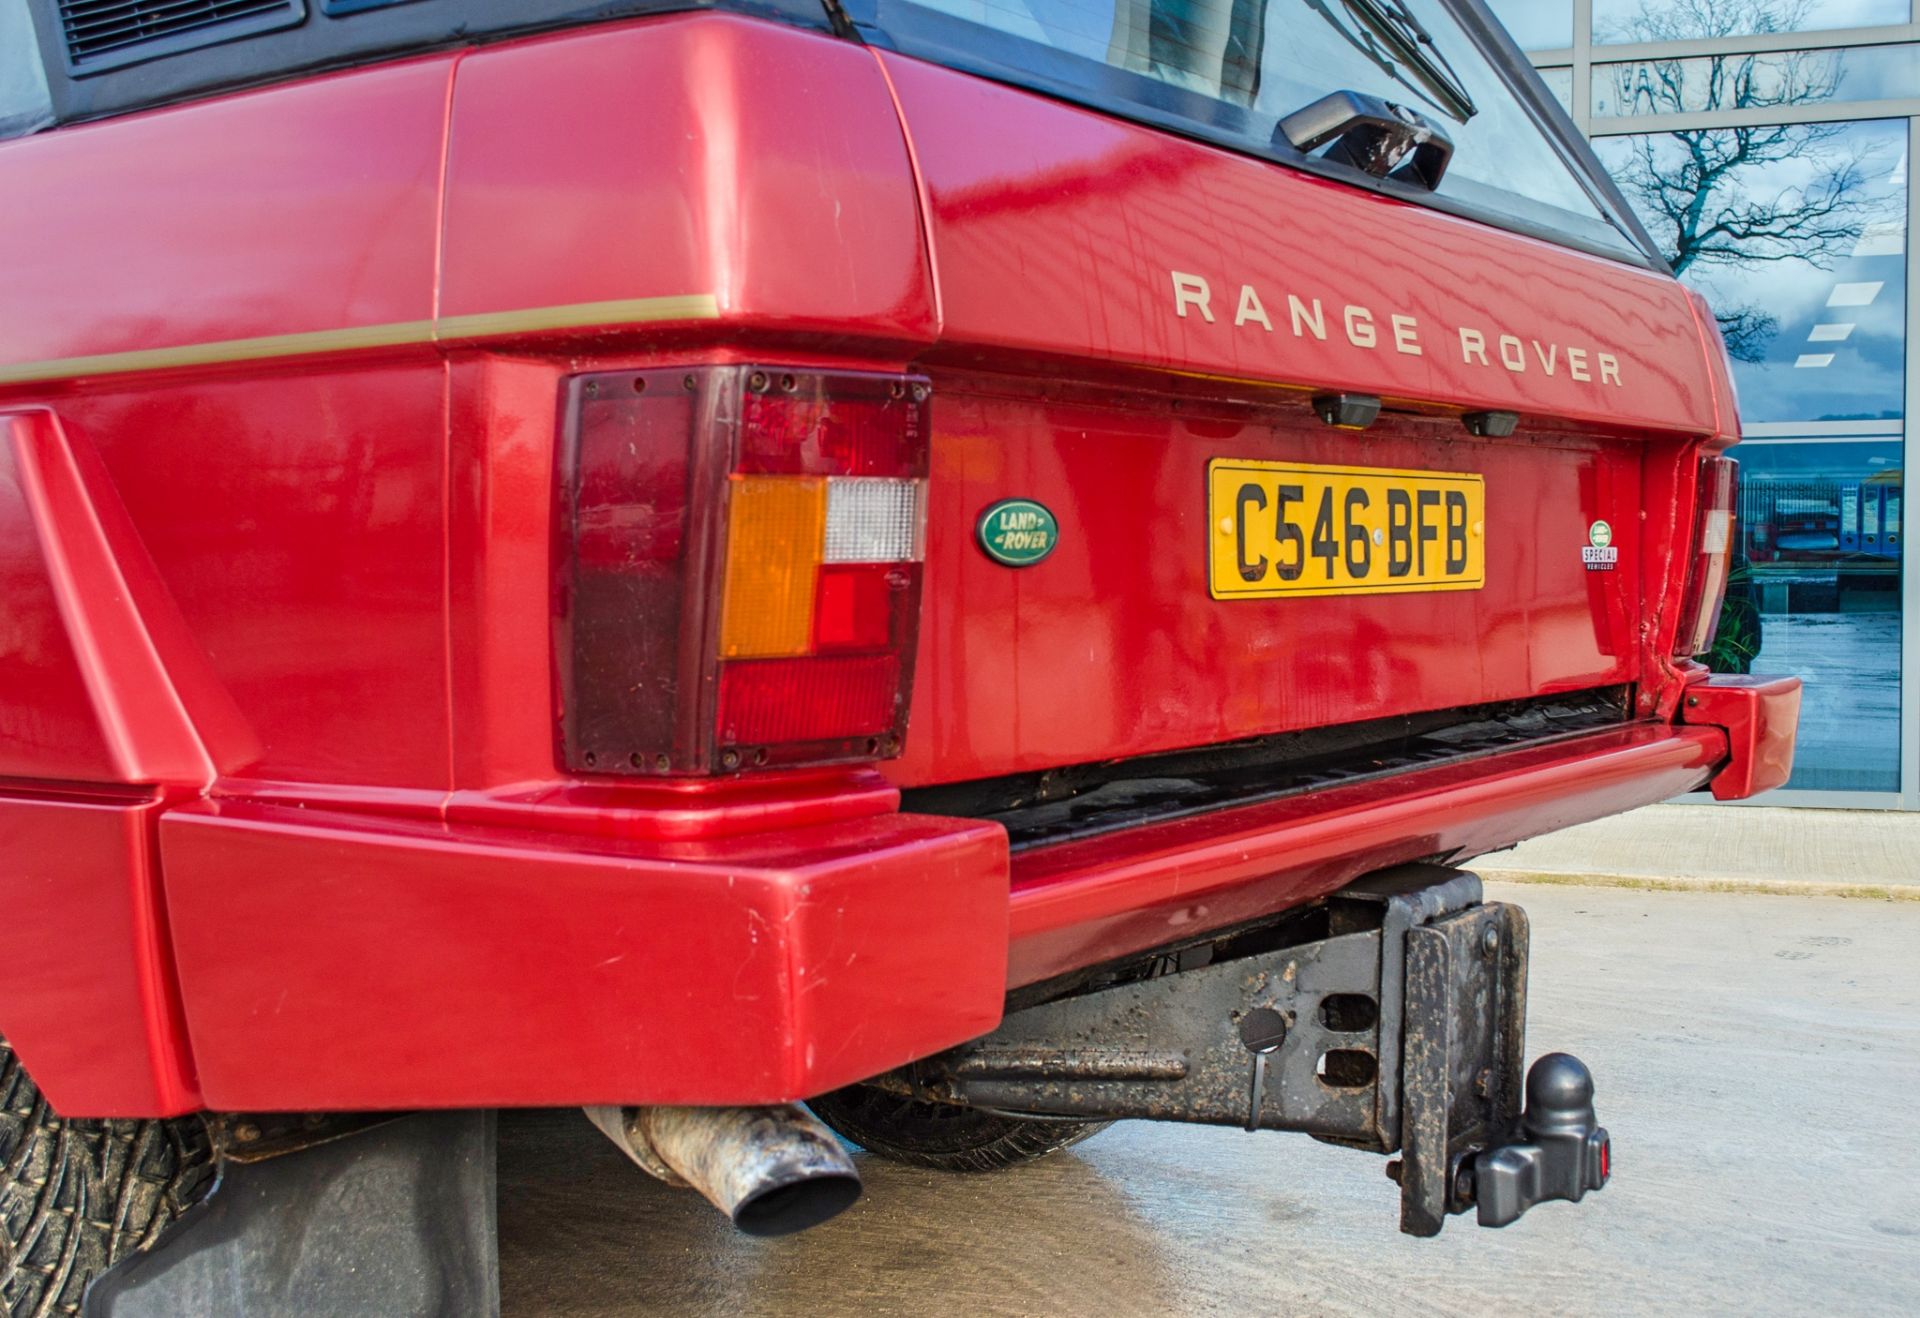 1985 Range Rover Glenfrome 3947cc V8 6-wheel 4 Door 4-wheel drive - Image 24 of 58